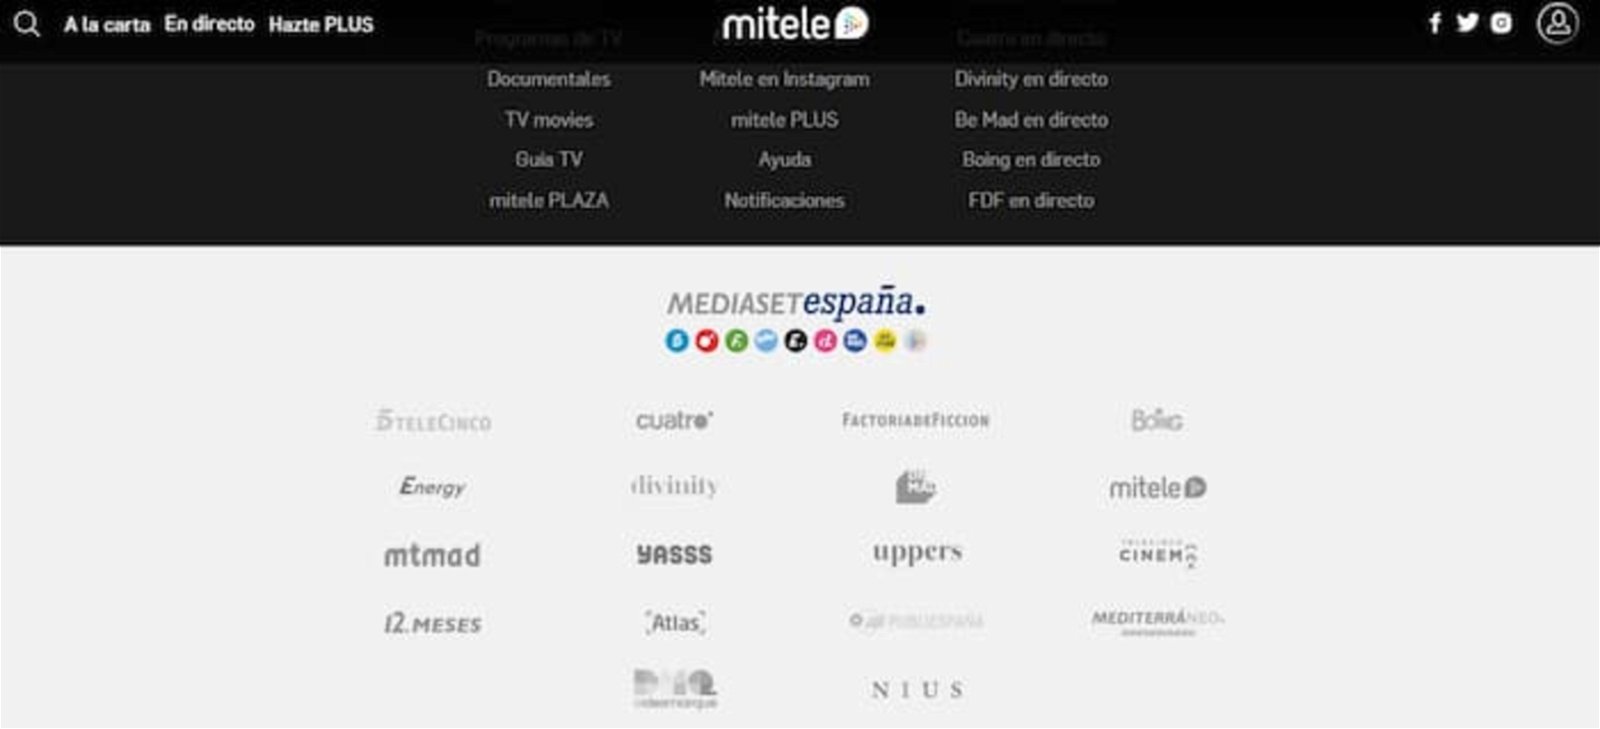 MiTele es una plataforma online gratuita que te brinda acceso a un montón de series y películas interesantes